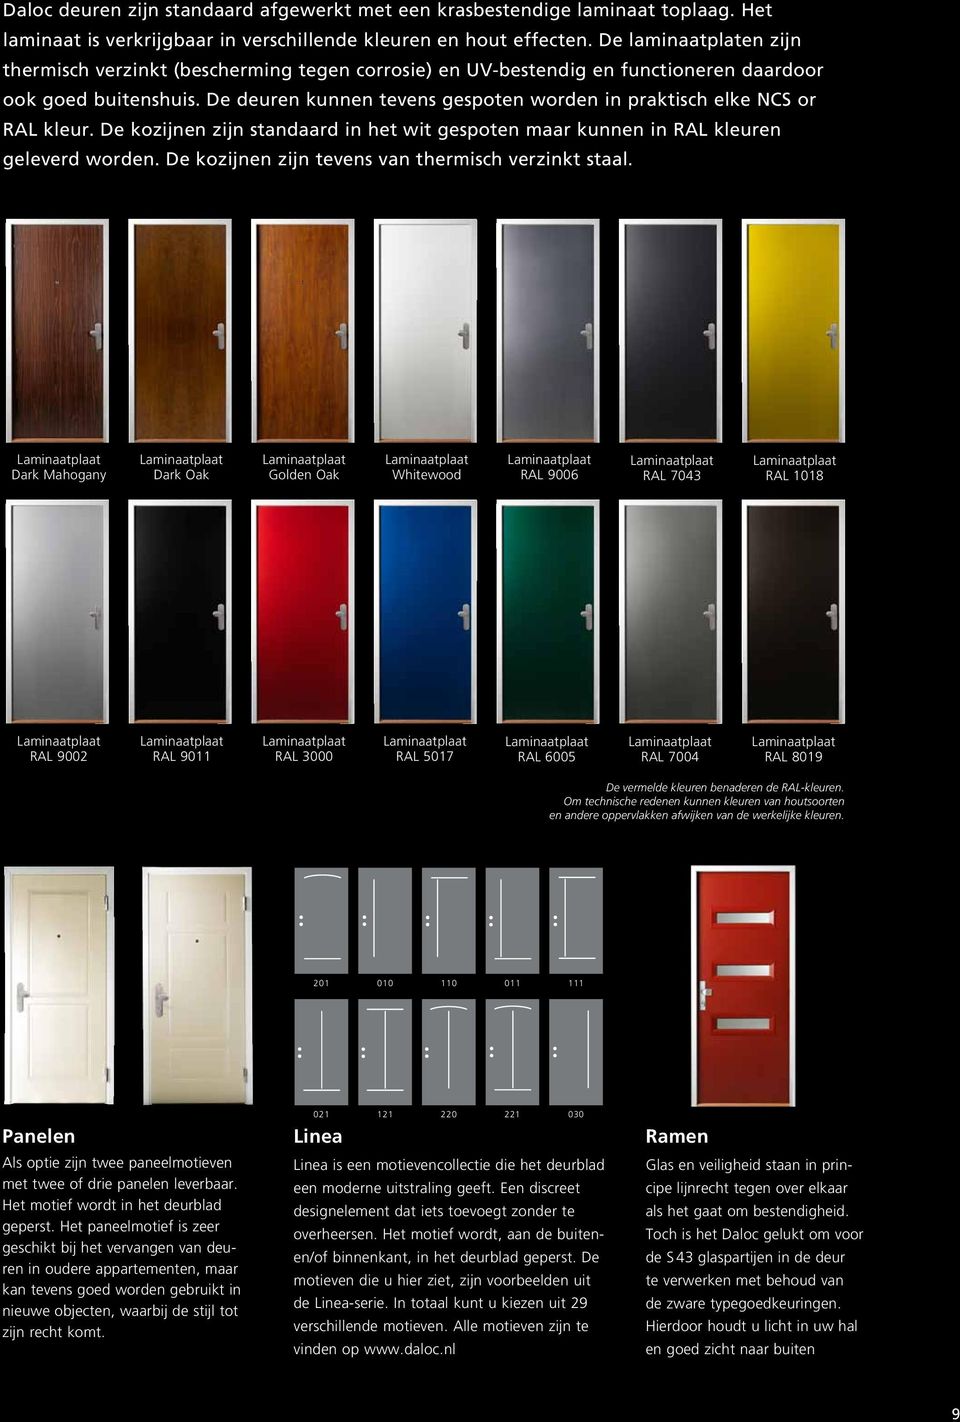 De deuren kunnen tevens gespoten worden in praktisch elke NCS or RAL kleur. De kozijnen zijn standaard in het wit gespoten maar kunnen in RAL kleuren geleverd worden.